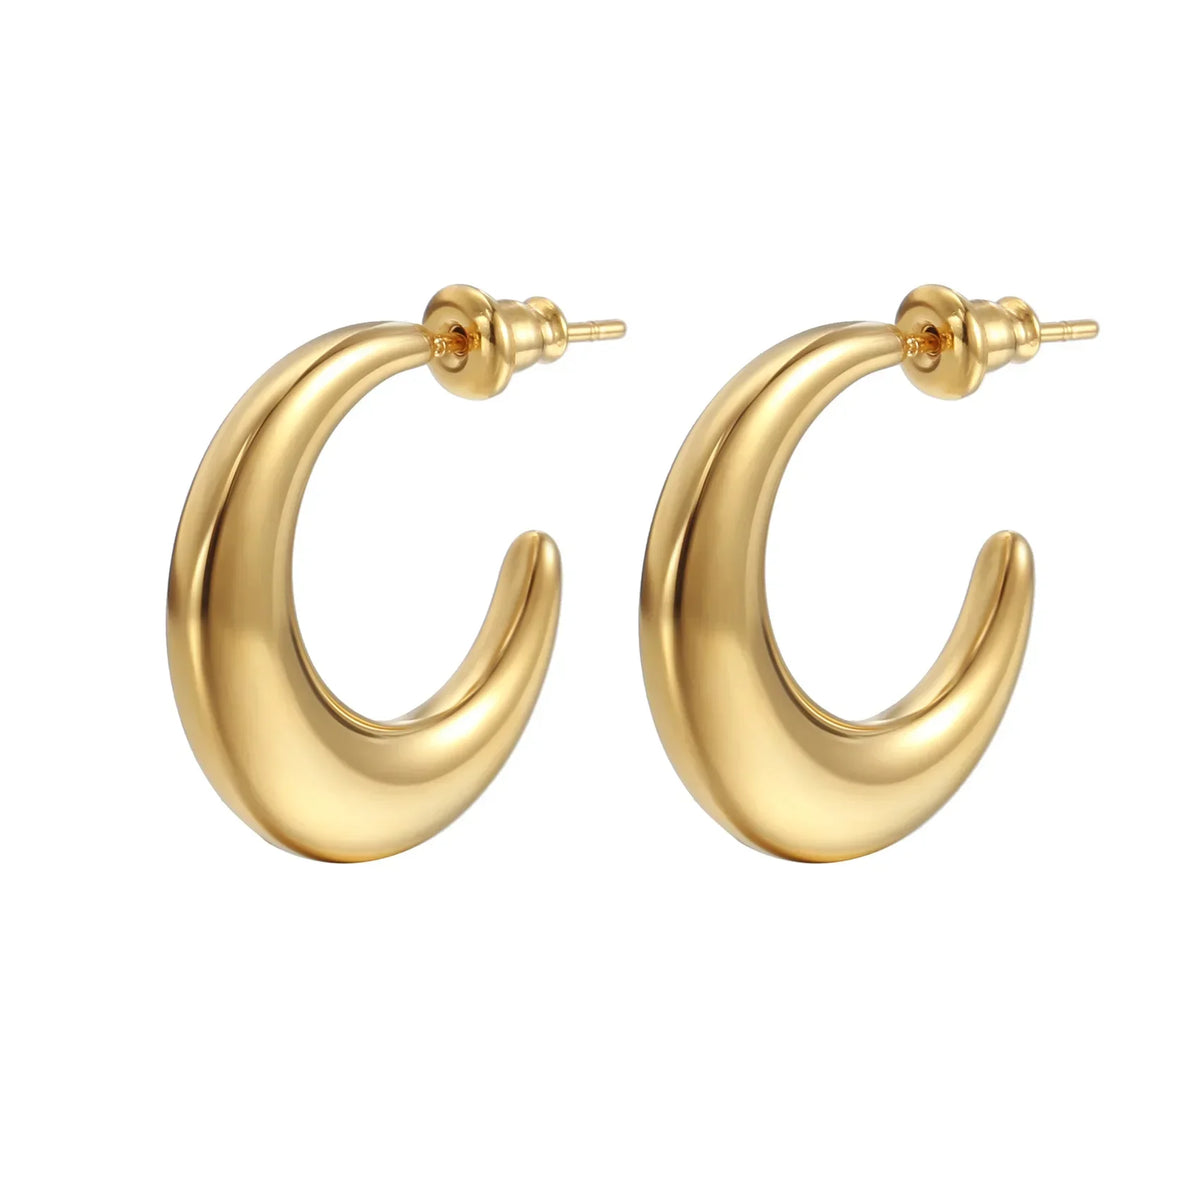 C Hoop Earrings 18k Gold Plated Waterproof Tarnish Free Jewelry KESLEY Medium Size Hoop Earrings